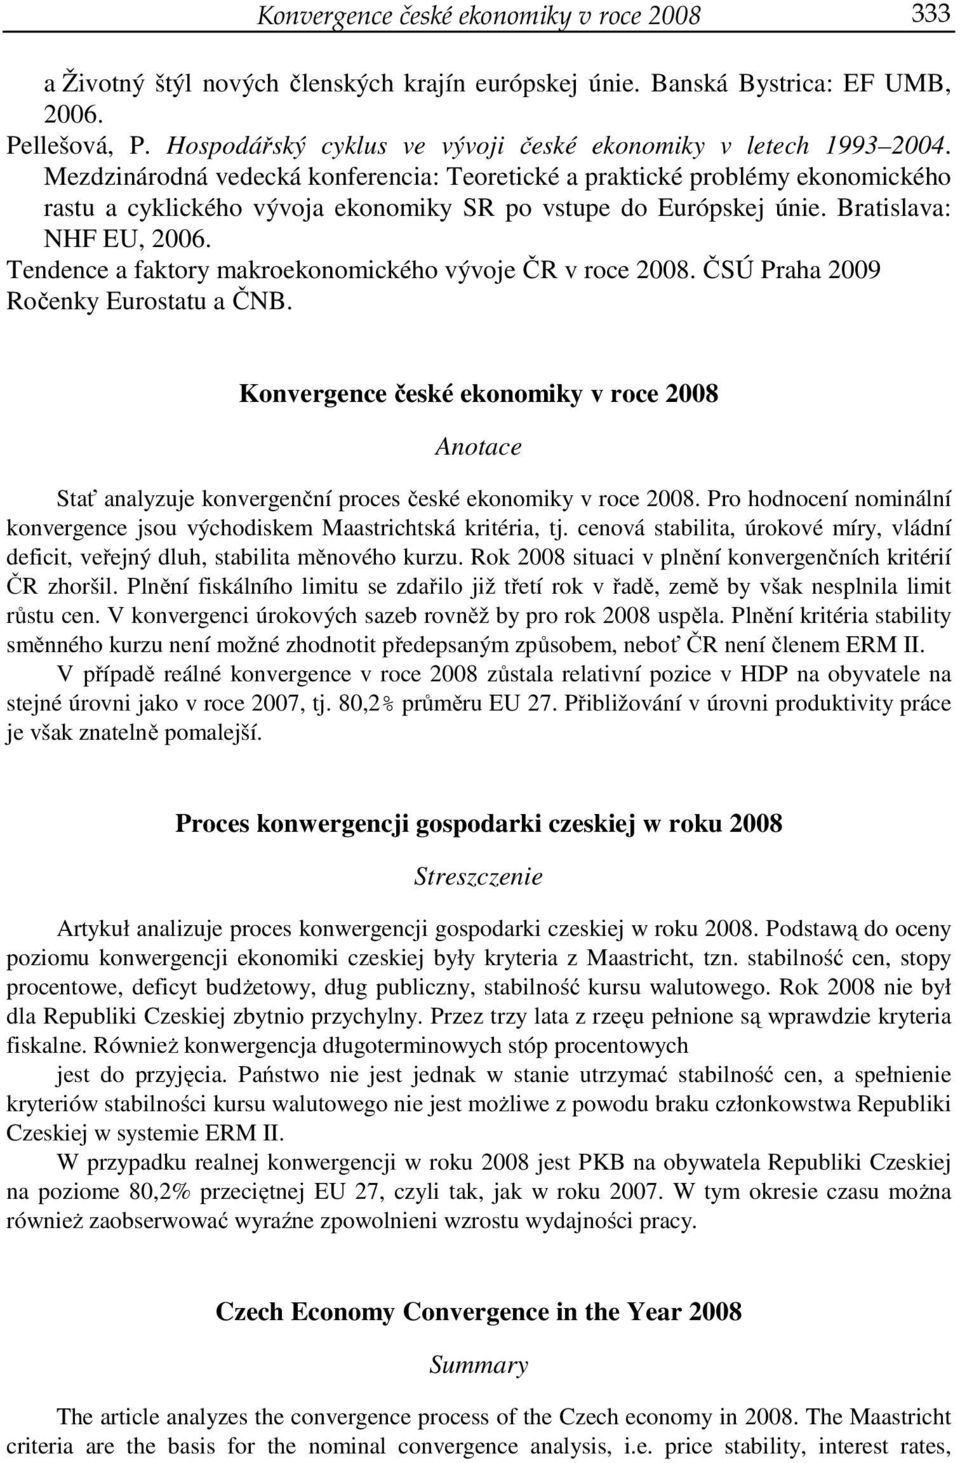 Mezdzinárodná vedecká konferencia: Teoretické a praktické problémy ekonomického rastu a cyklického vývoja ekonomiky SR po vstupe do Európskej únie. Bratislava: NHF EU, 2006.